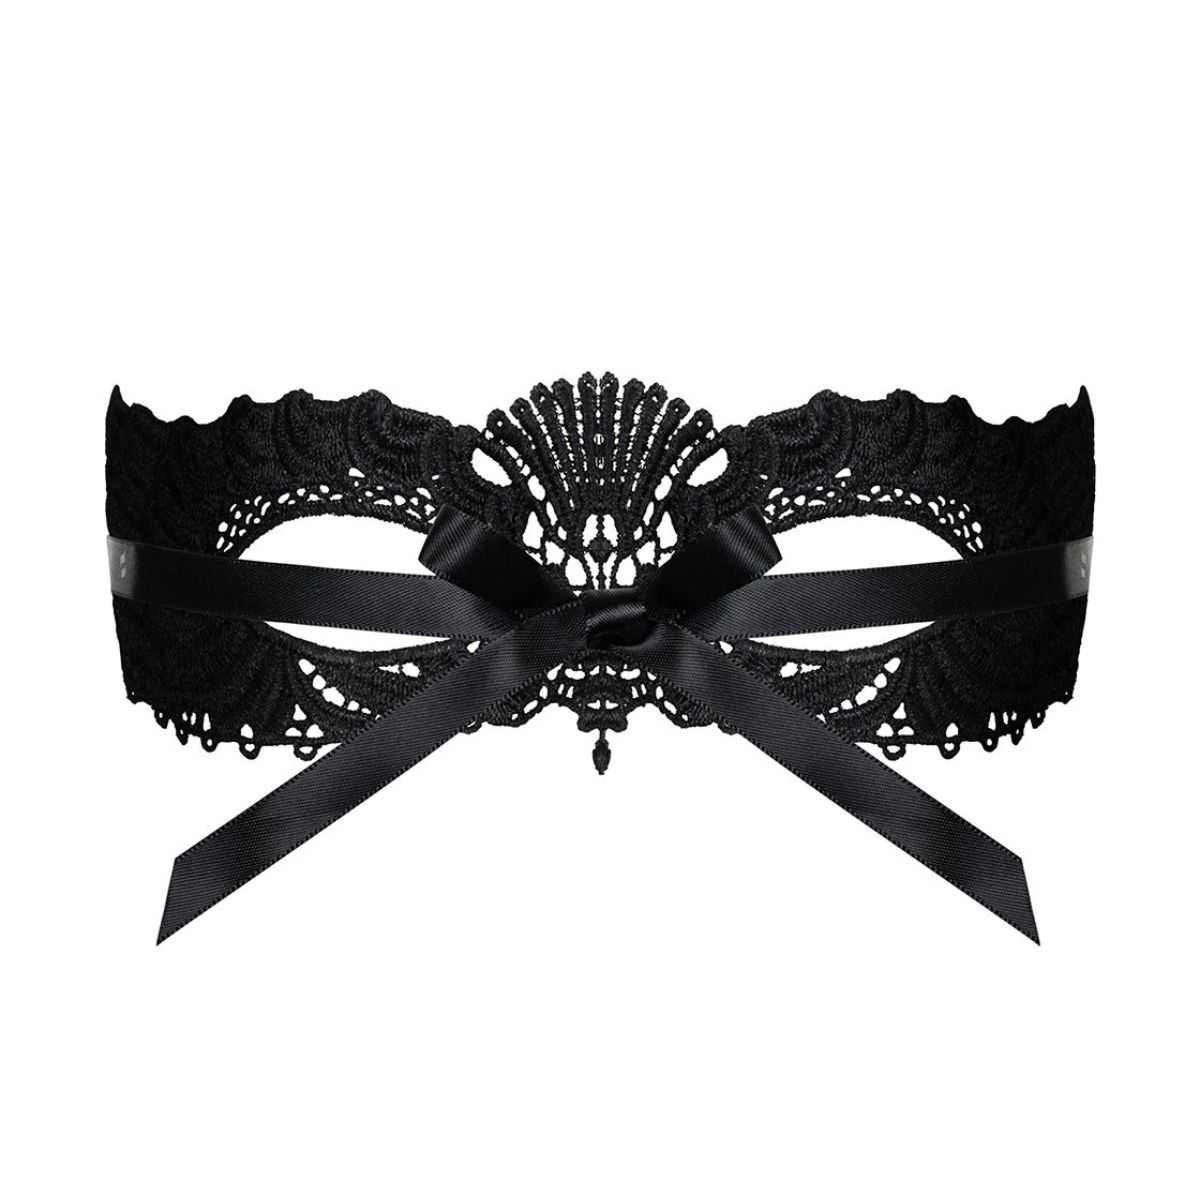 Maschera in pizzo nero modello A700 Obsessive